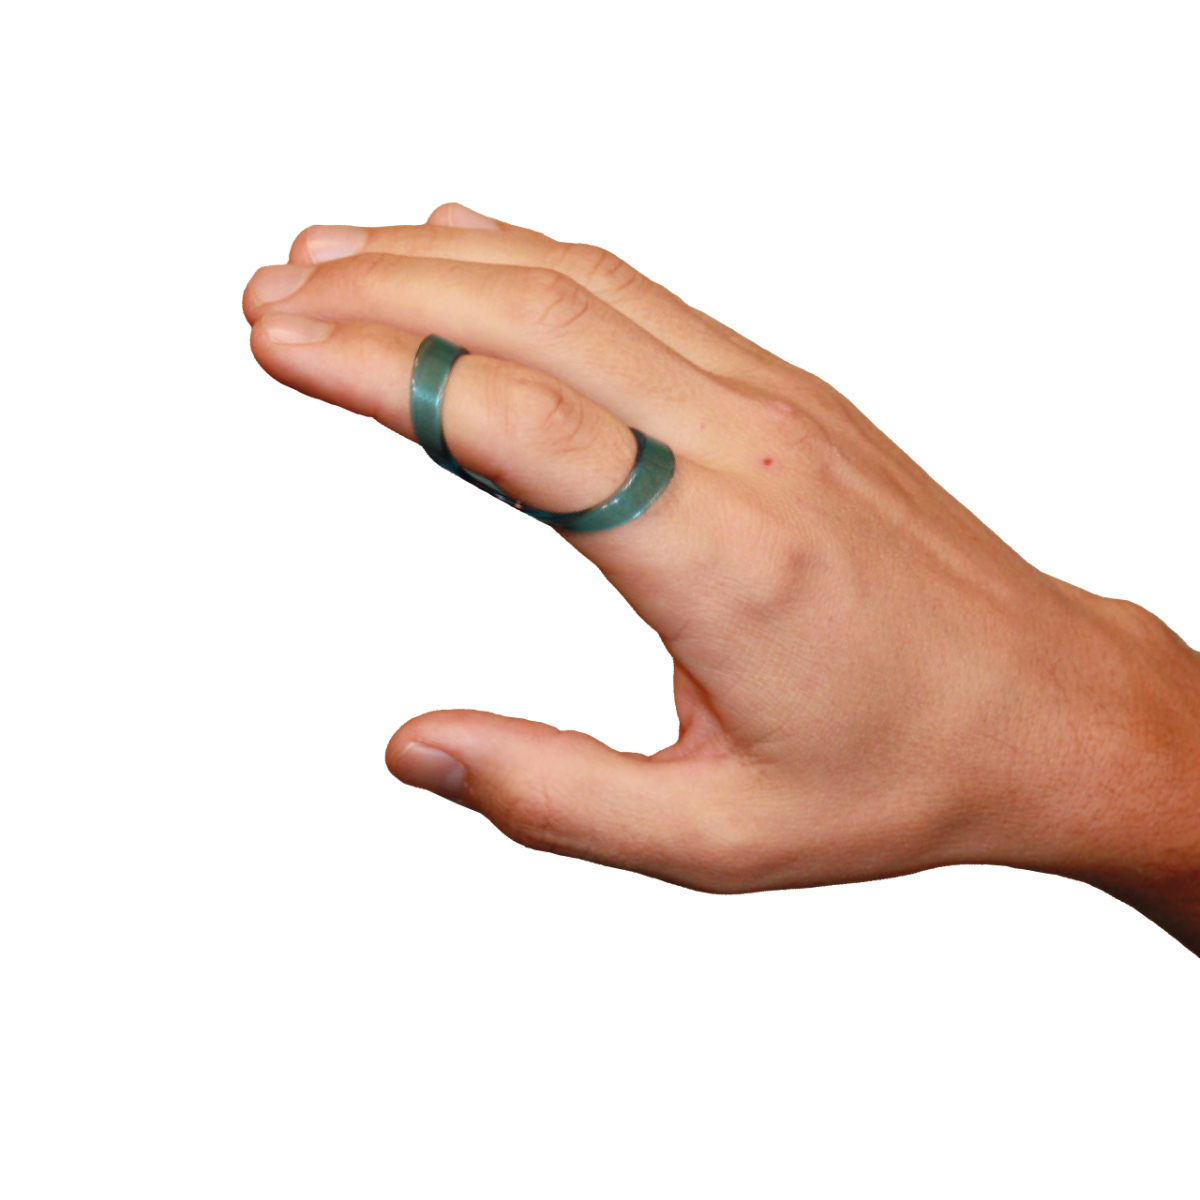 Fixační ortéza na prst krátká transparentní CATELL, vel. 30, C5180*30